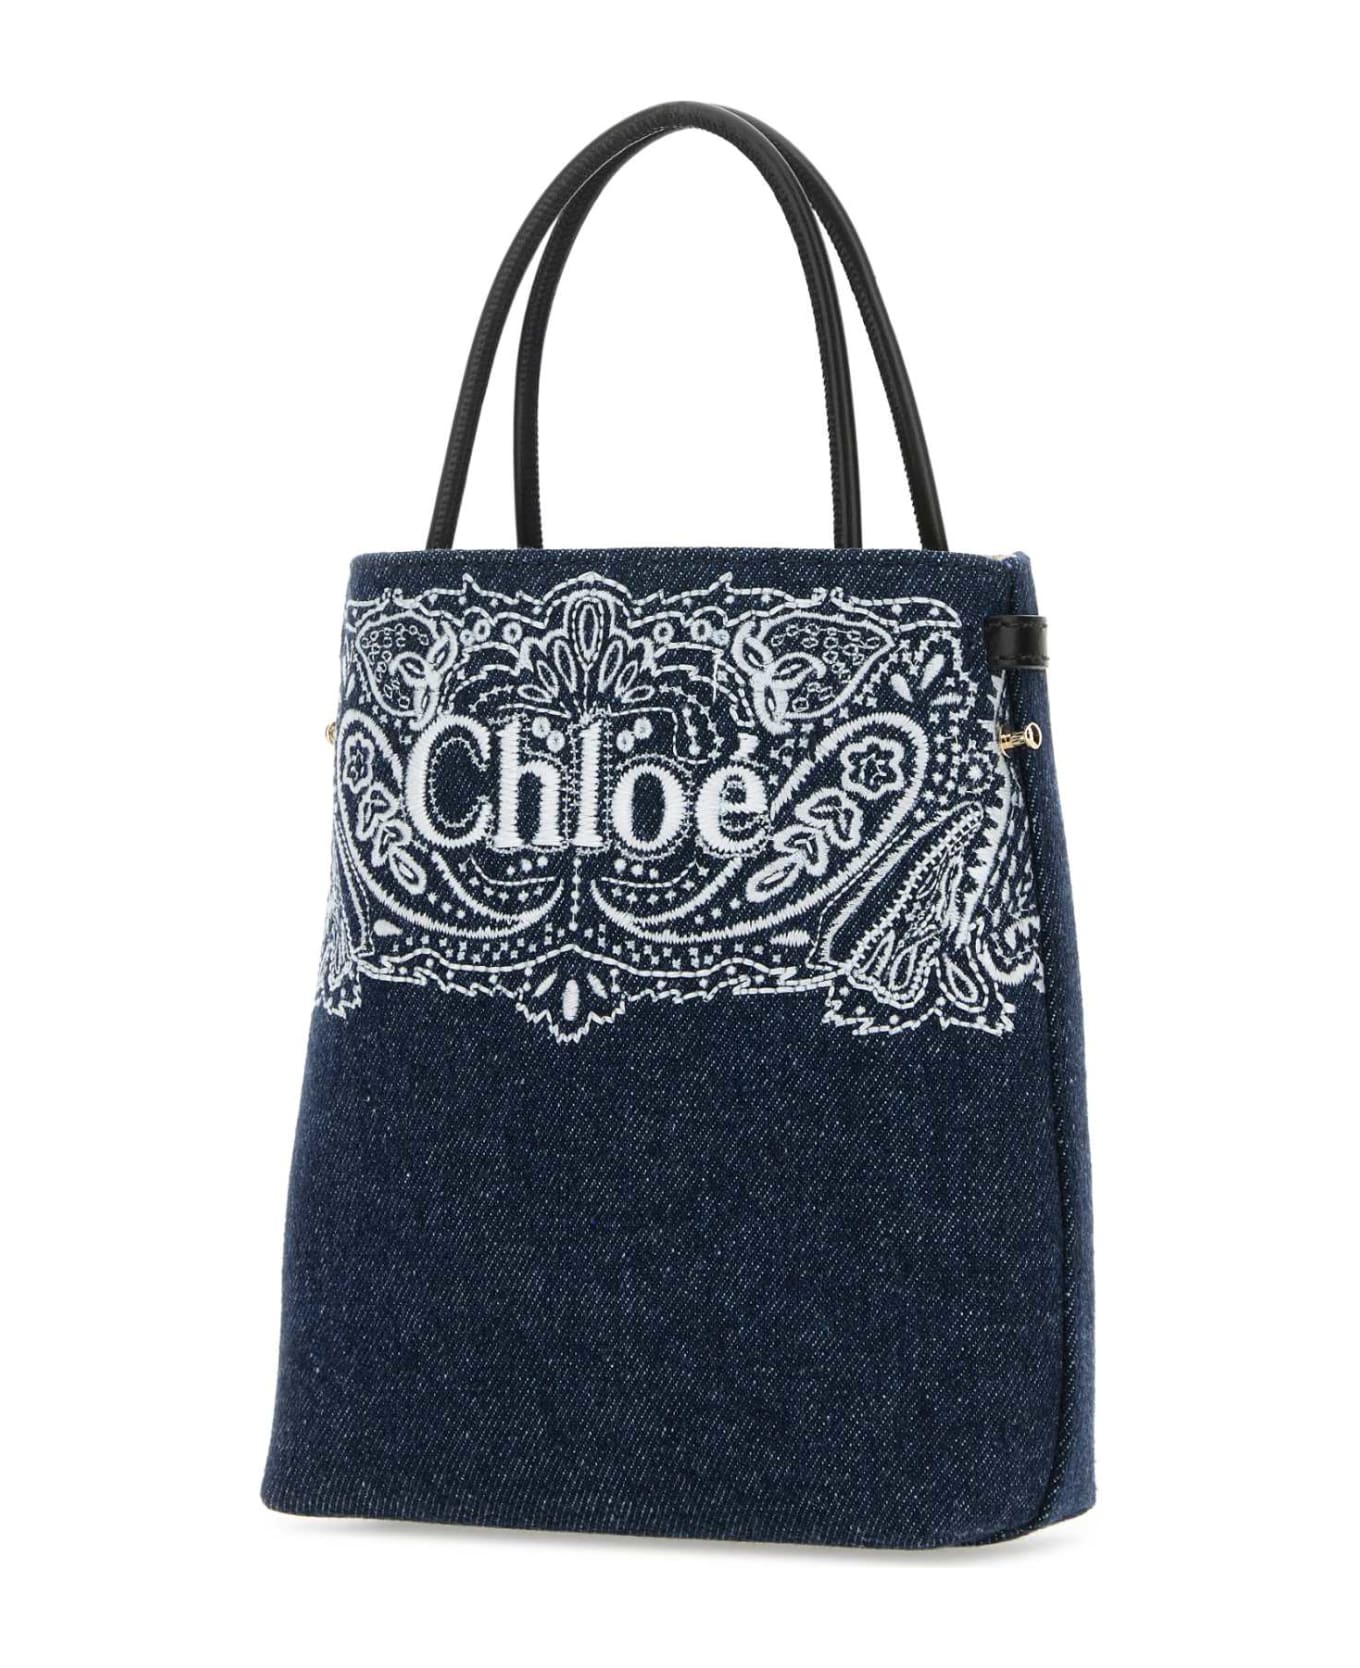 Chloé Denim Micro Sense Handbag - DENIM